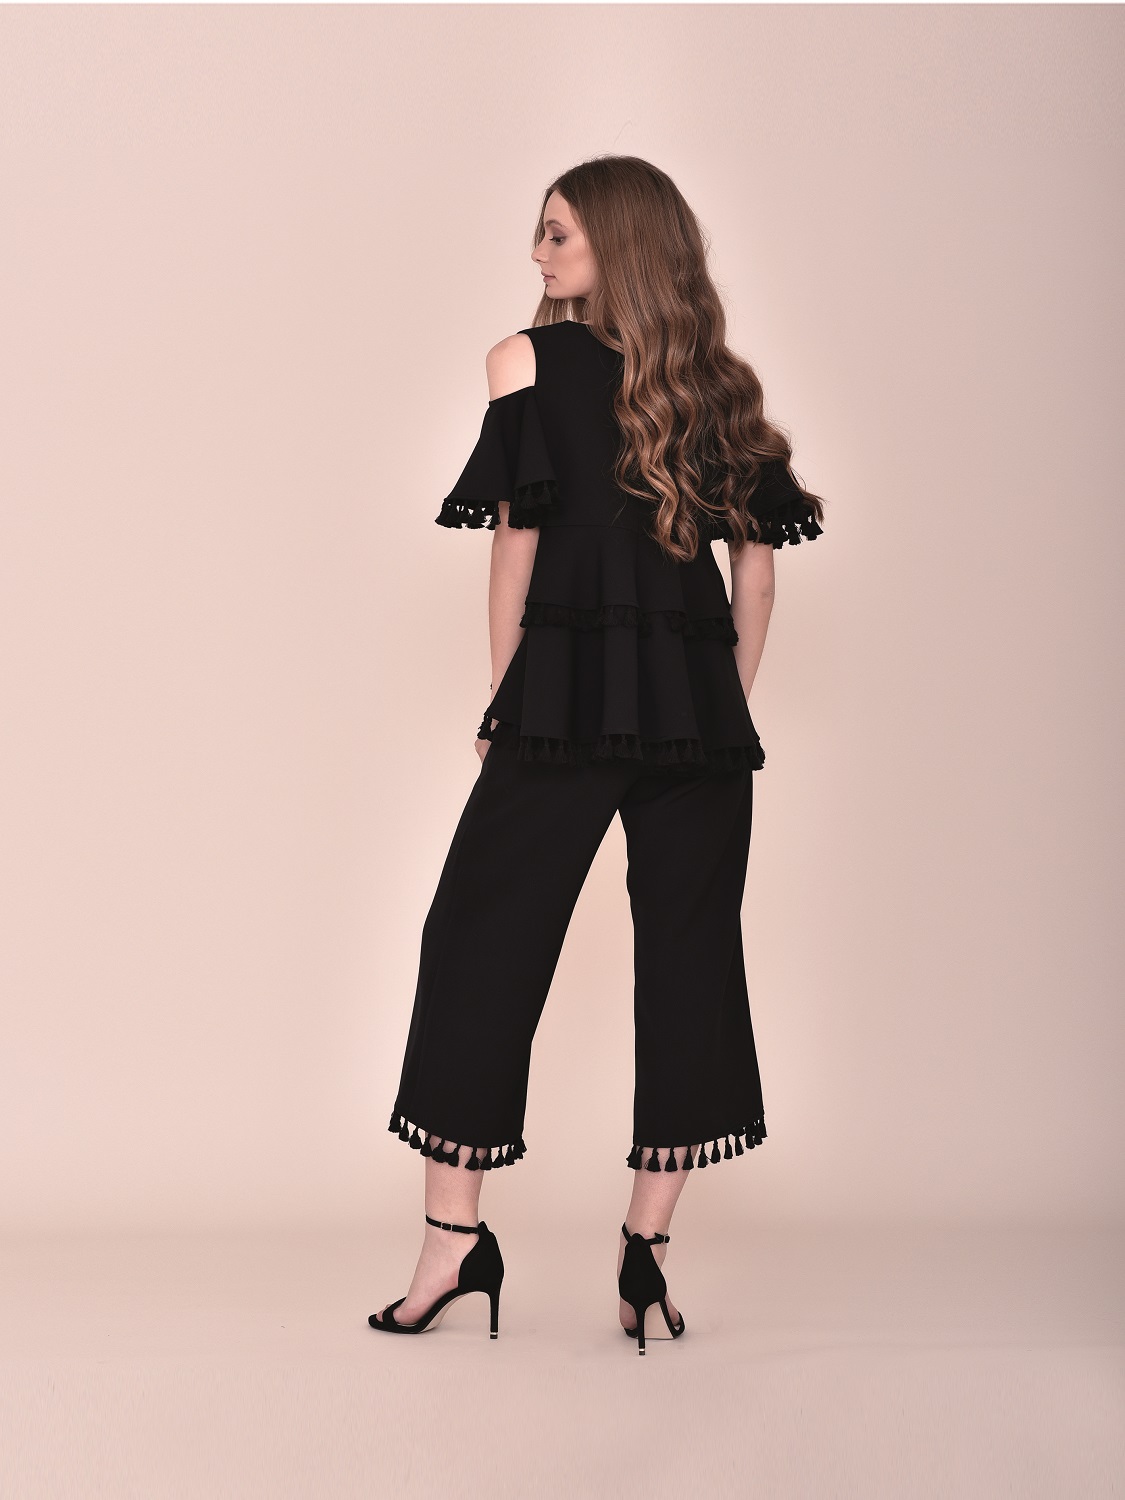 Conjunto pantalón negro con top con volantes con detalles madroños fiesta 2020 verano